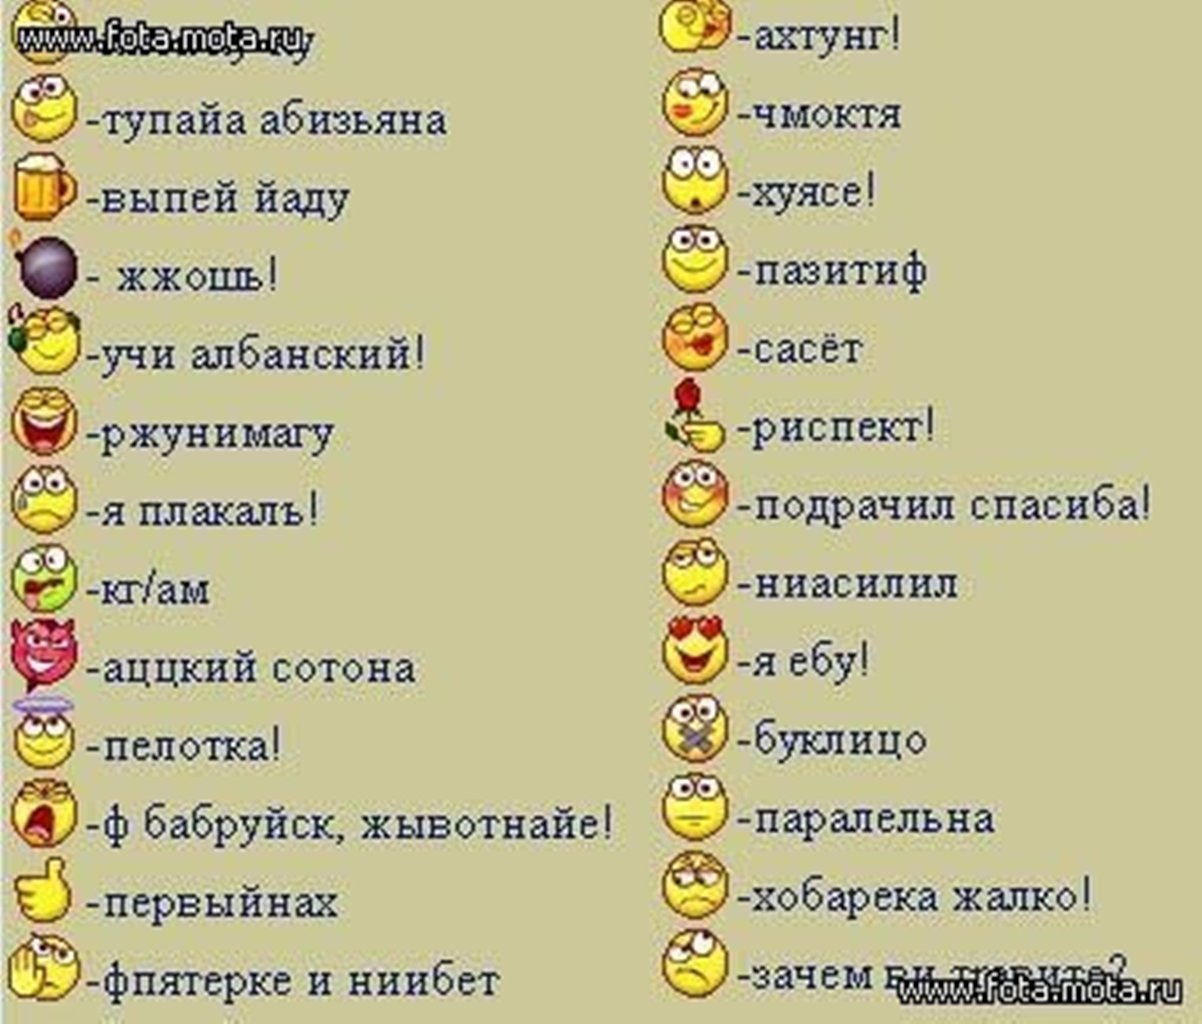 Значения смайликов в телеграмме на русском языке фото 22